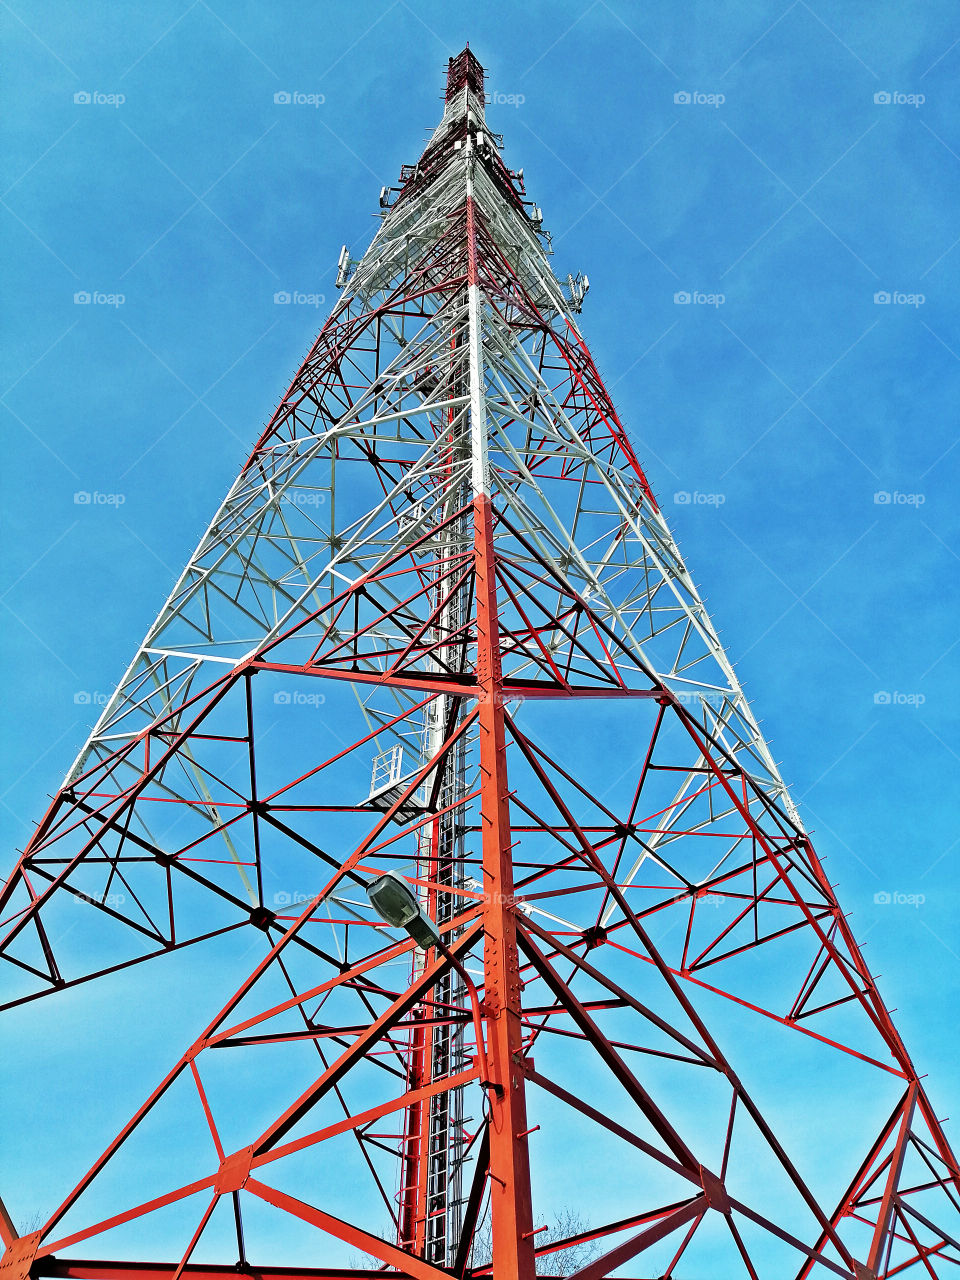 BIG Telecom Tower